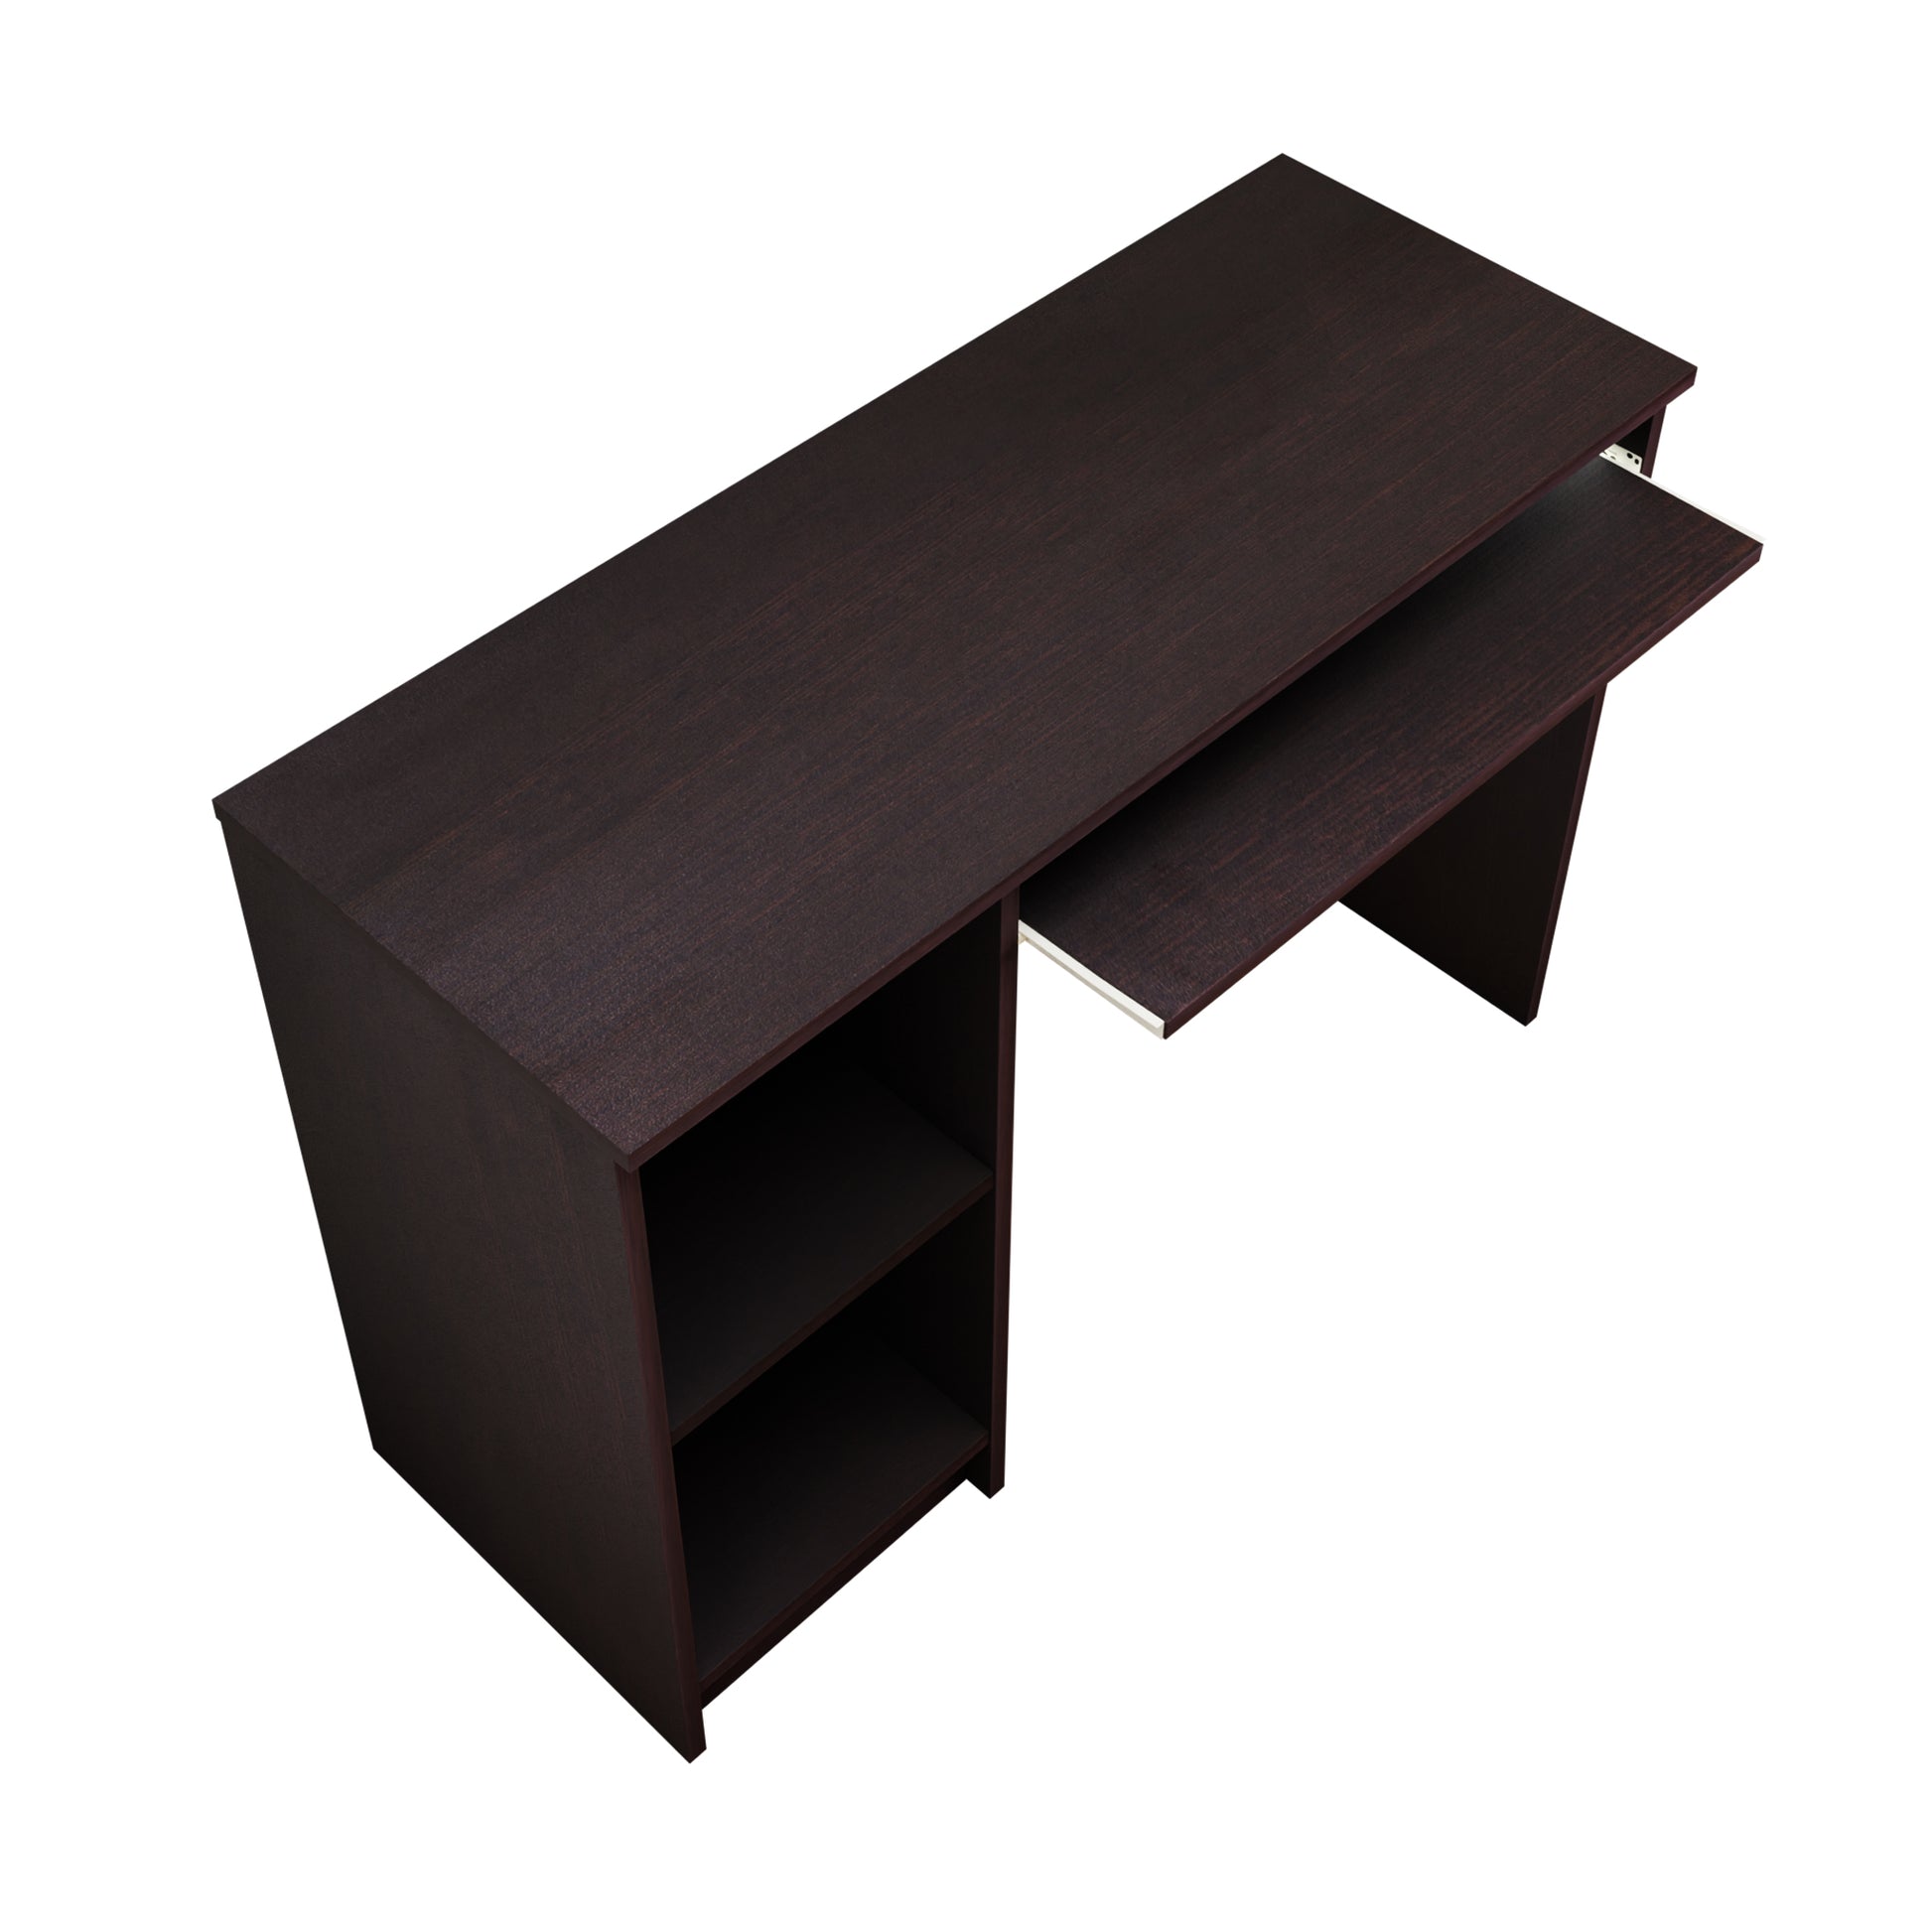 KANI | Desks & Tables Tables VIKI FURNITURE   